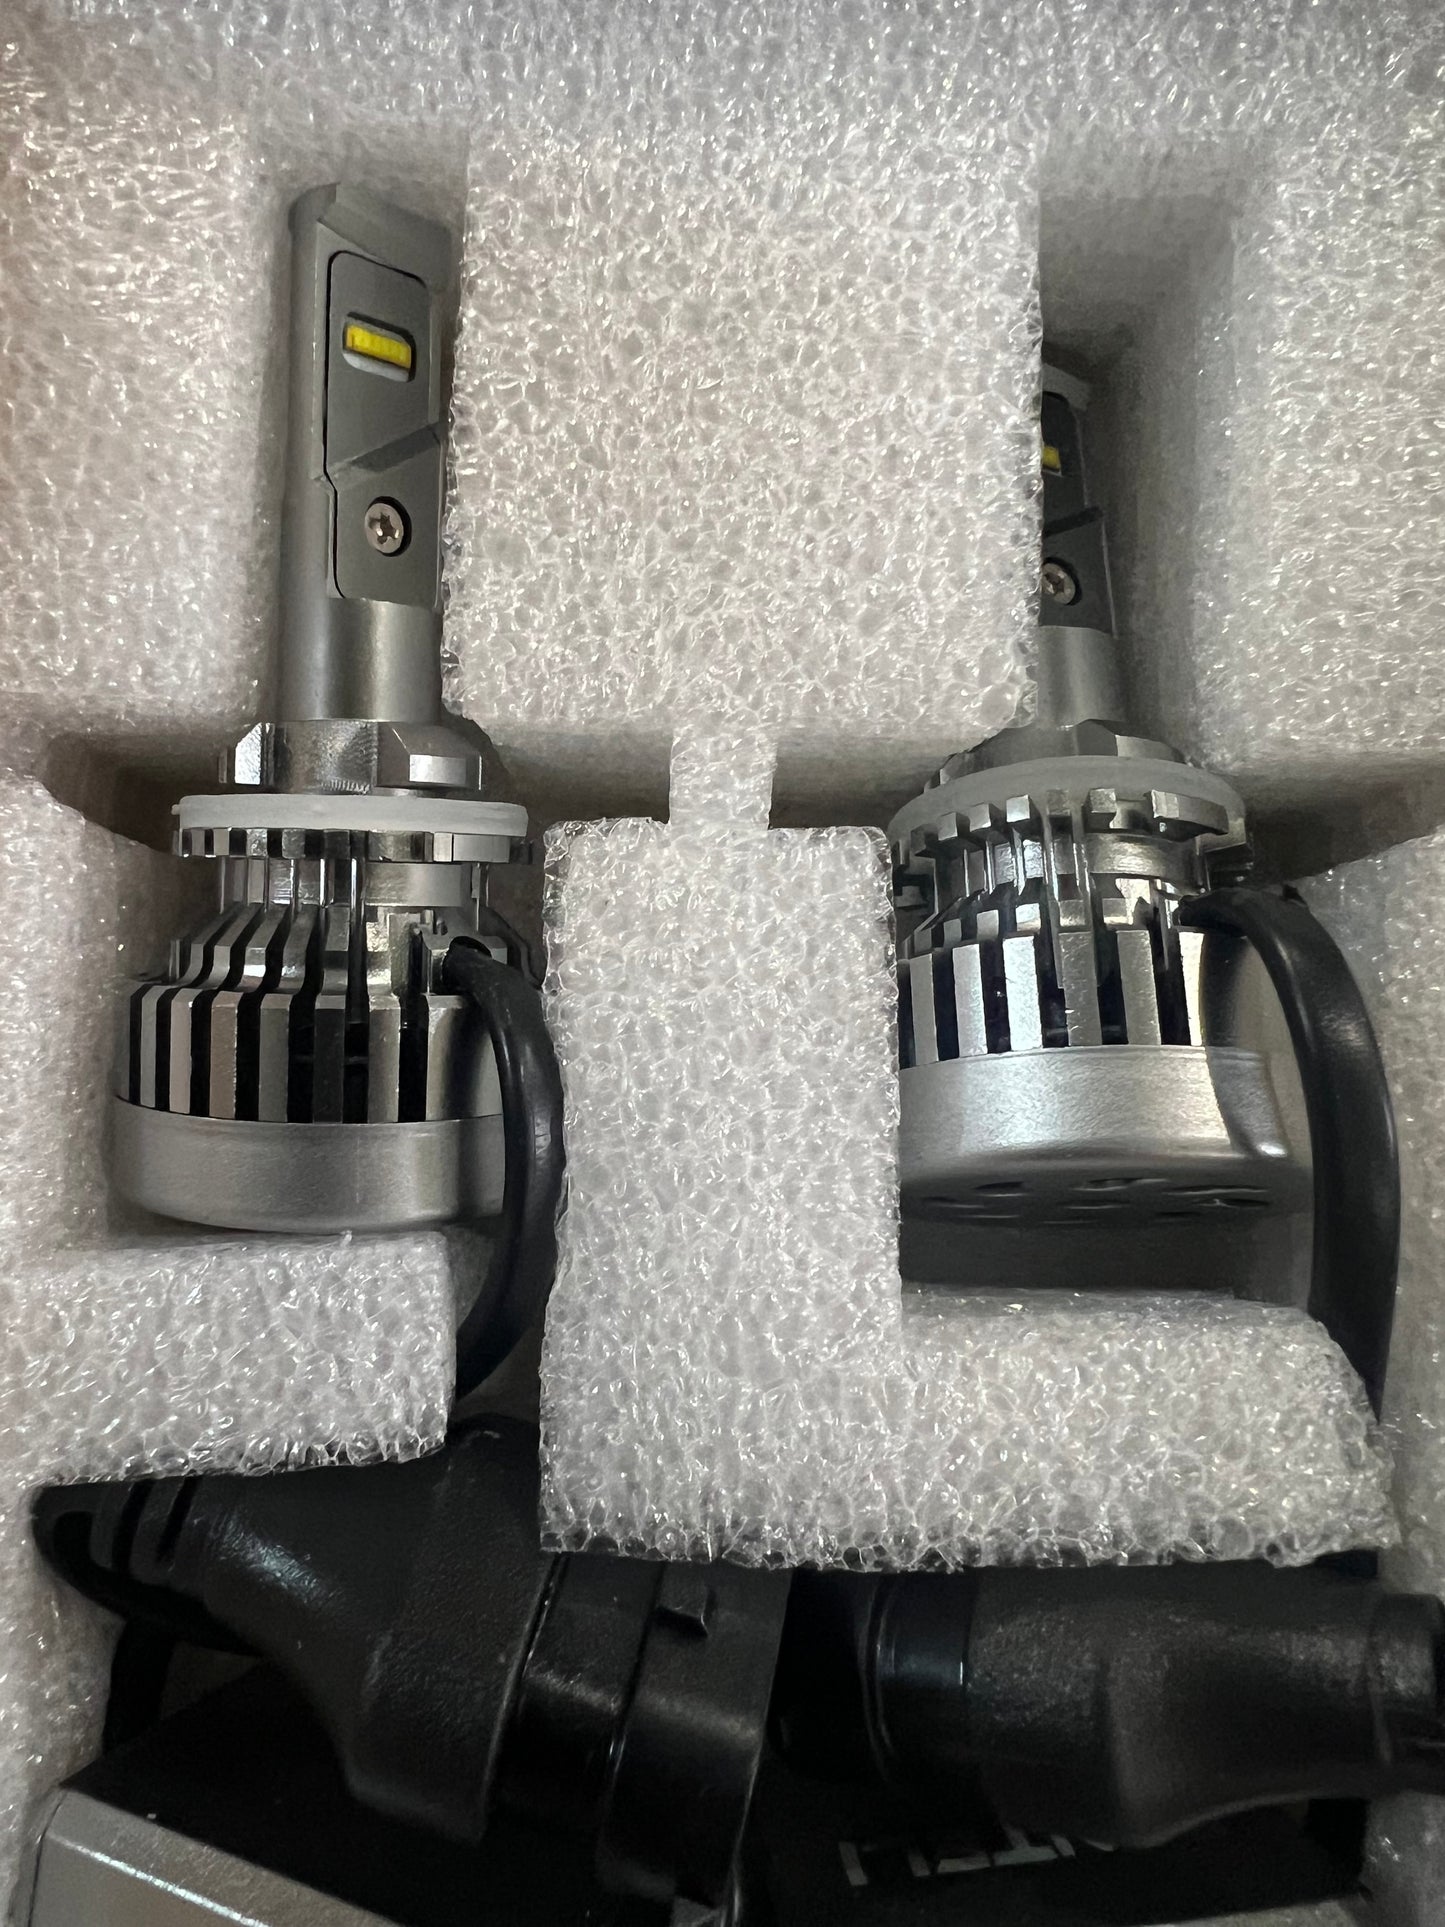 2018 Honda Pioneer 700 UTV LED Headlight Kit